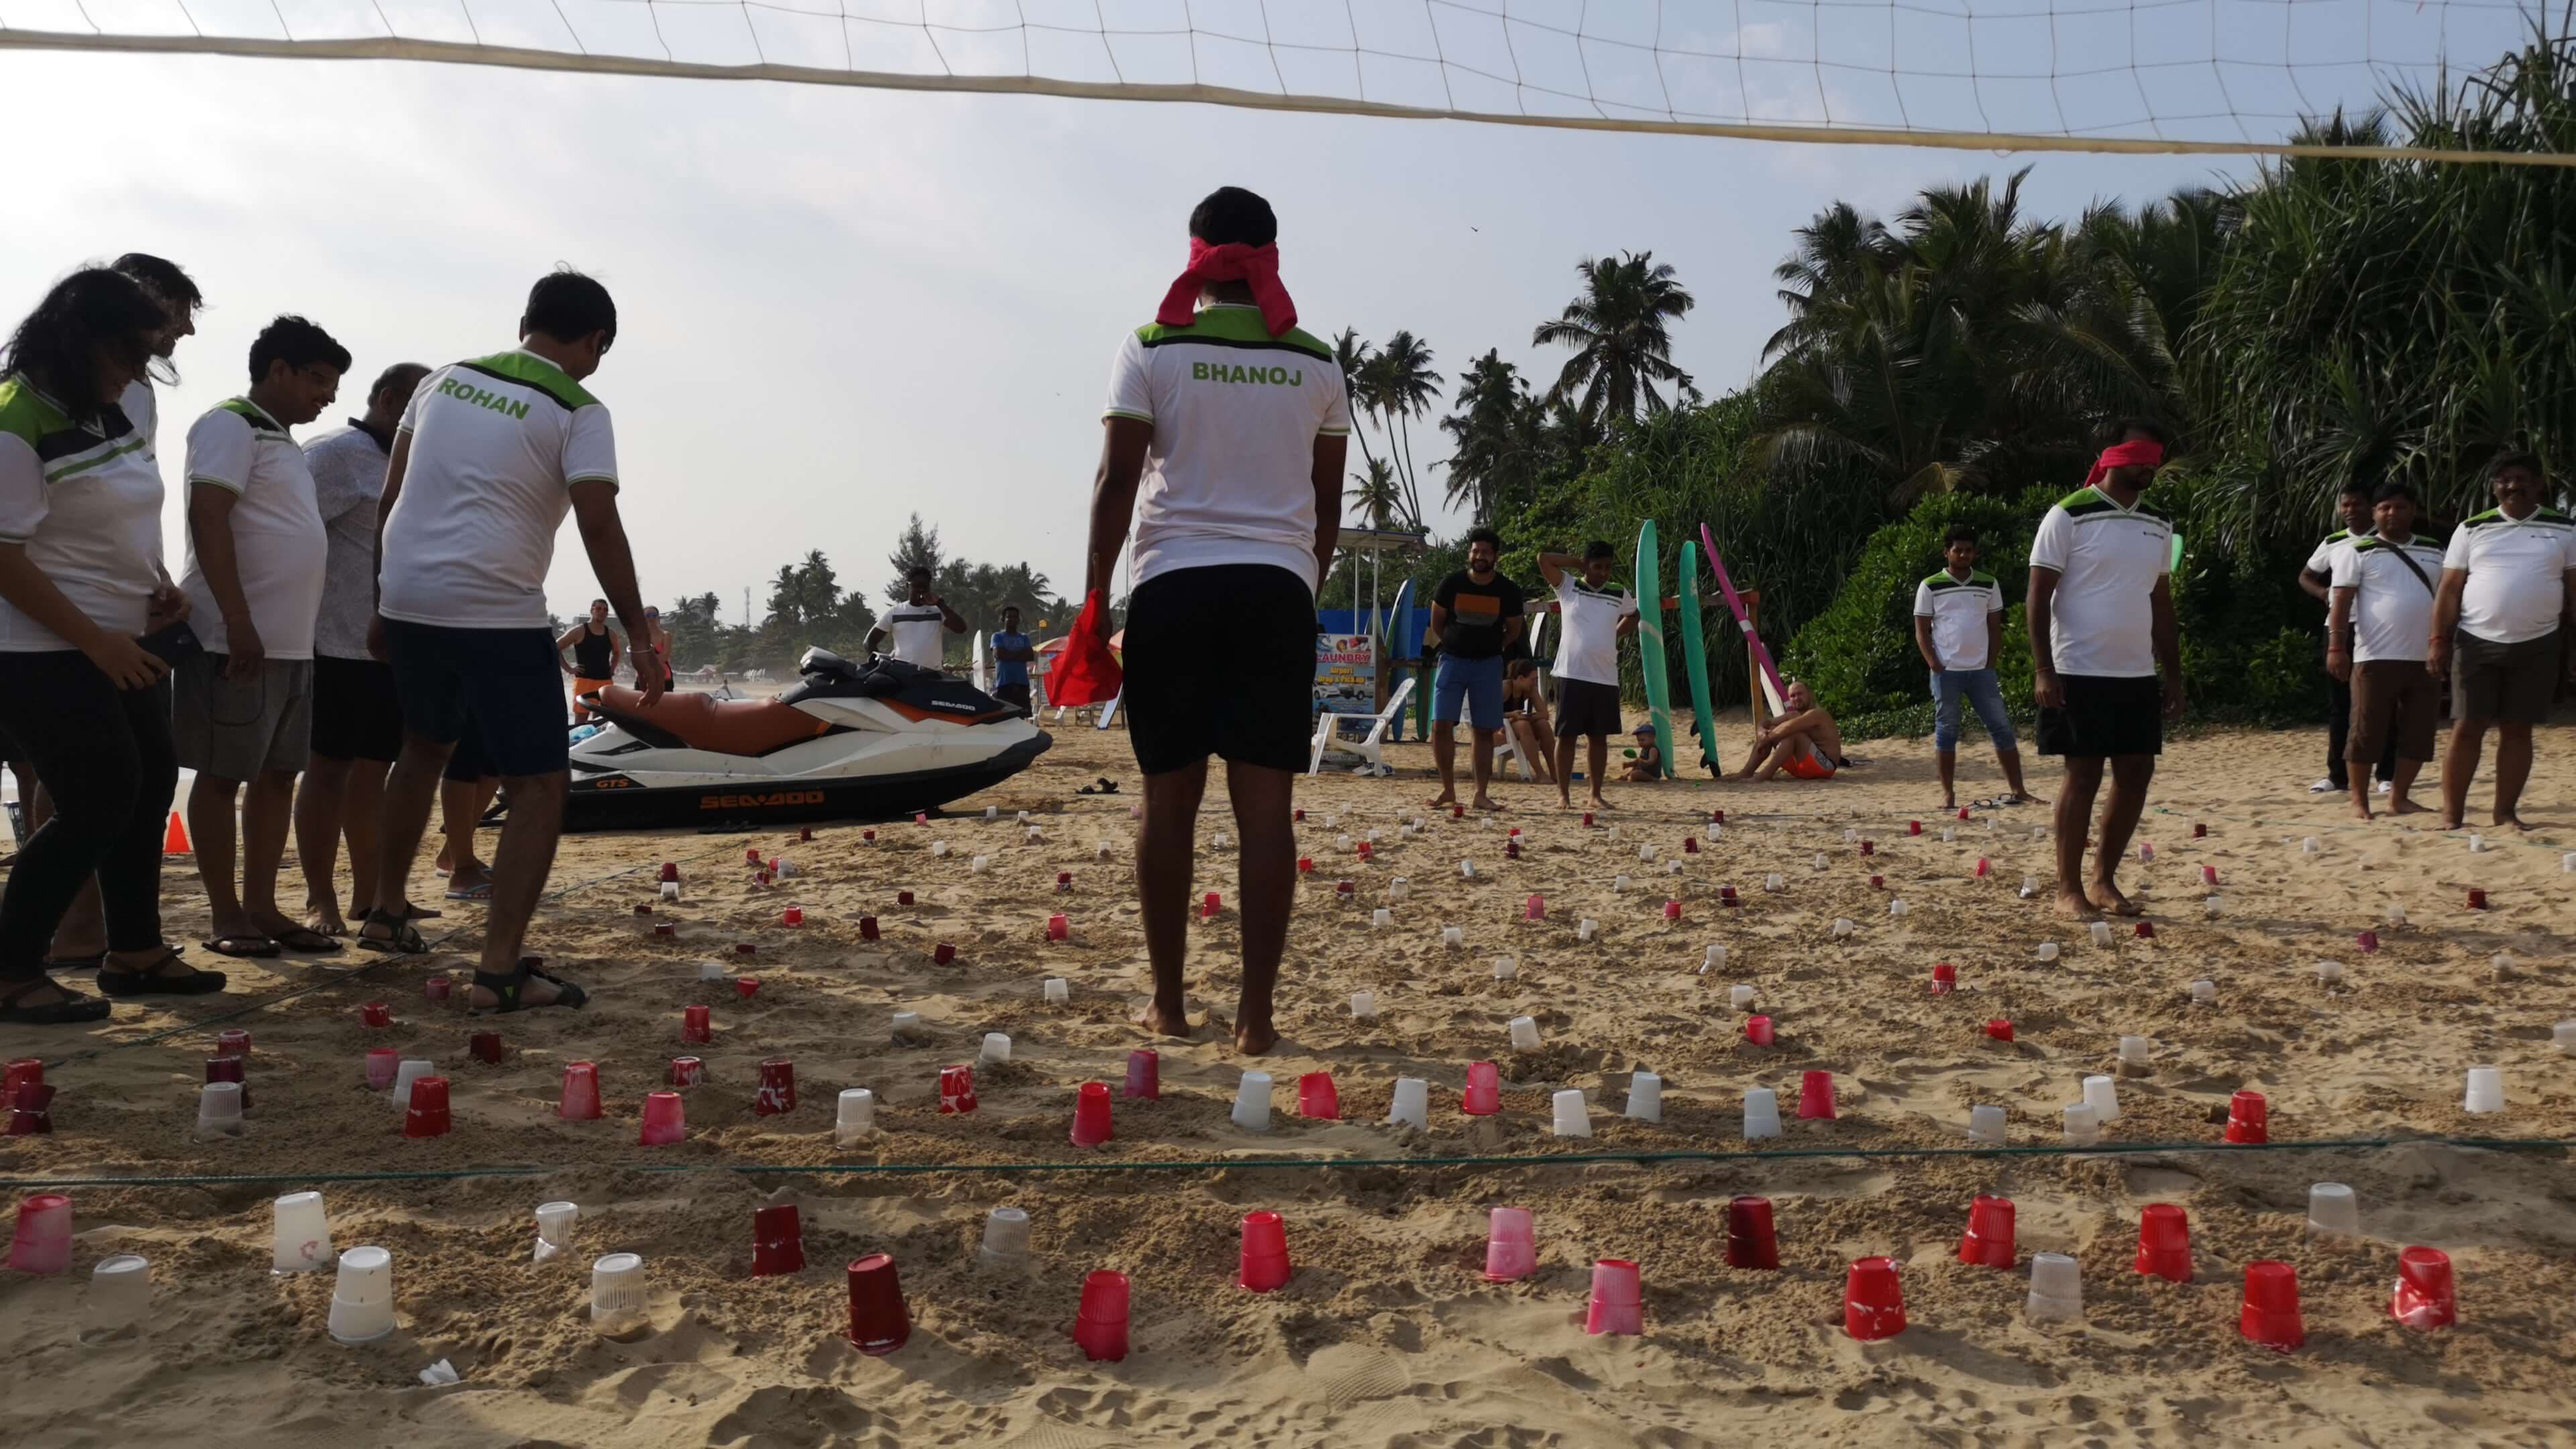 Un evento de formación de equipos organizado en la playa, Sri Lanka.